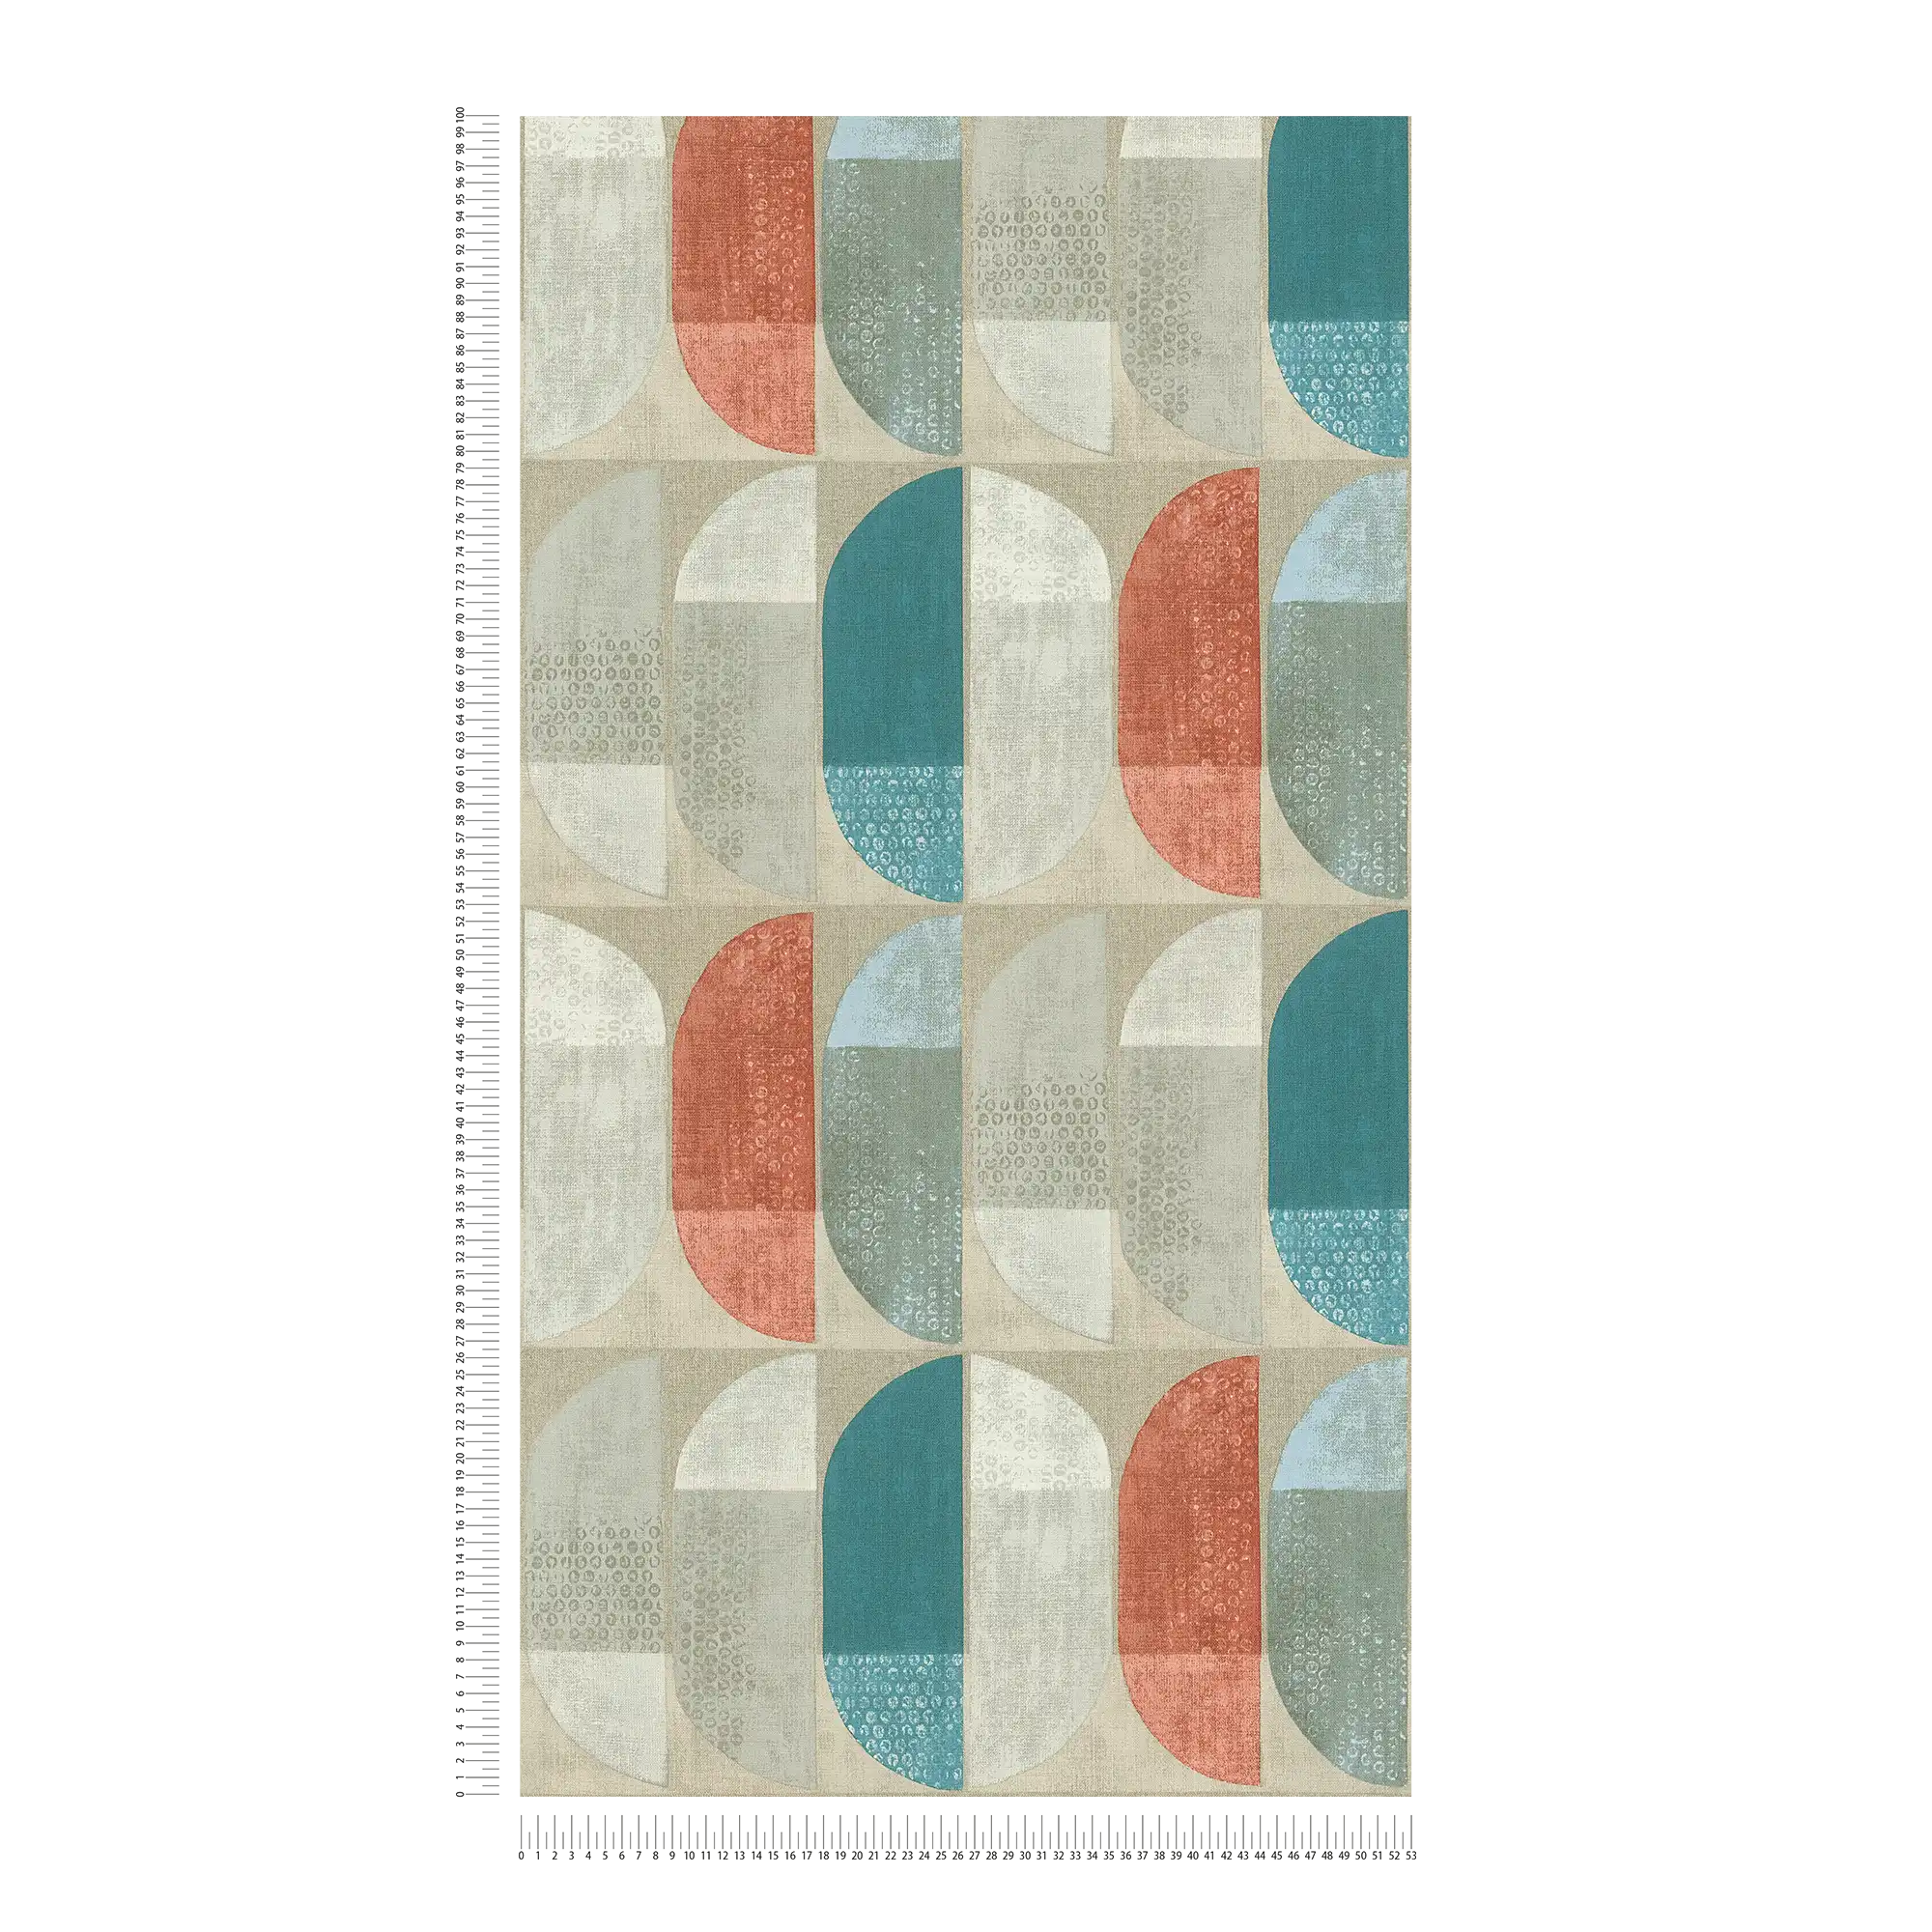             behang geometrisch retro patroon, Scandinavische stijl - beige, rood, blauw
        